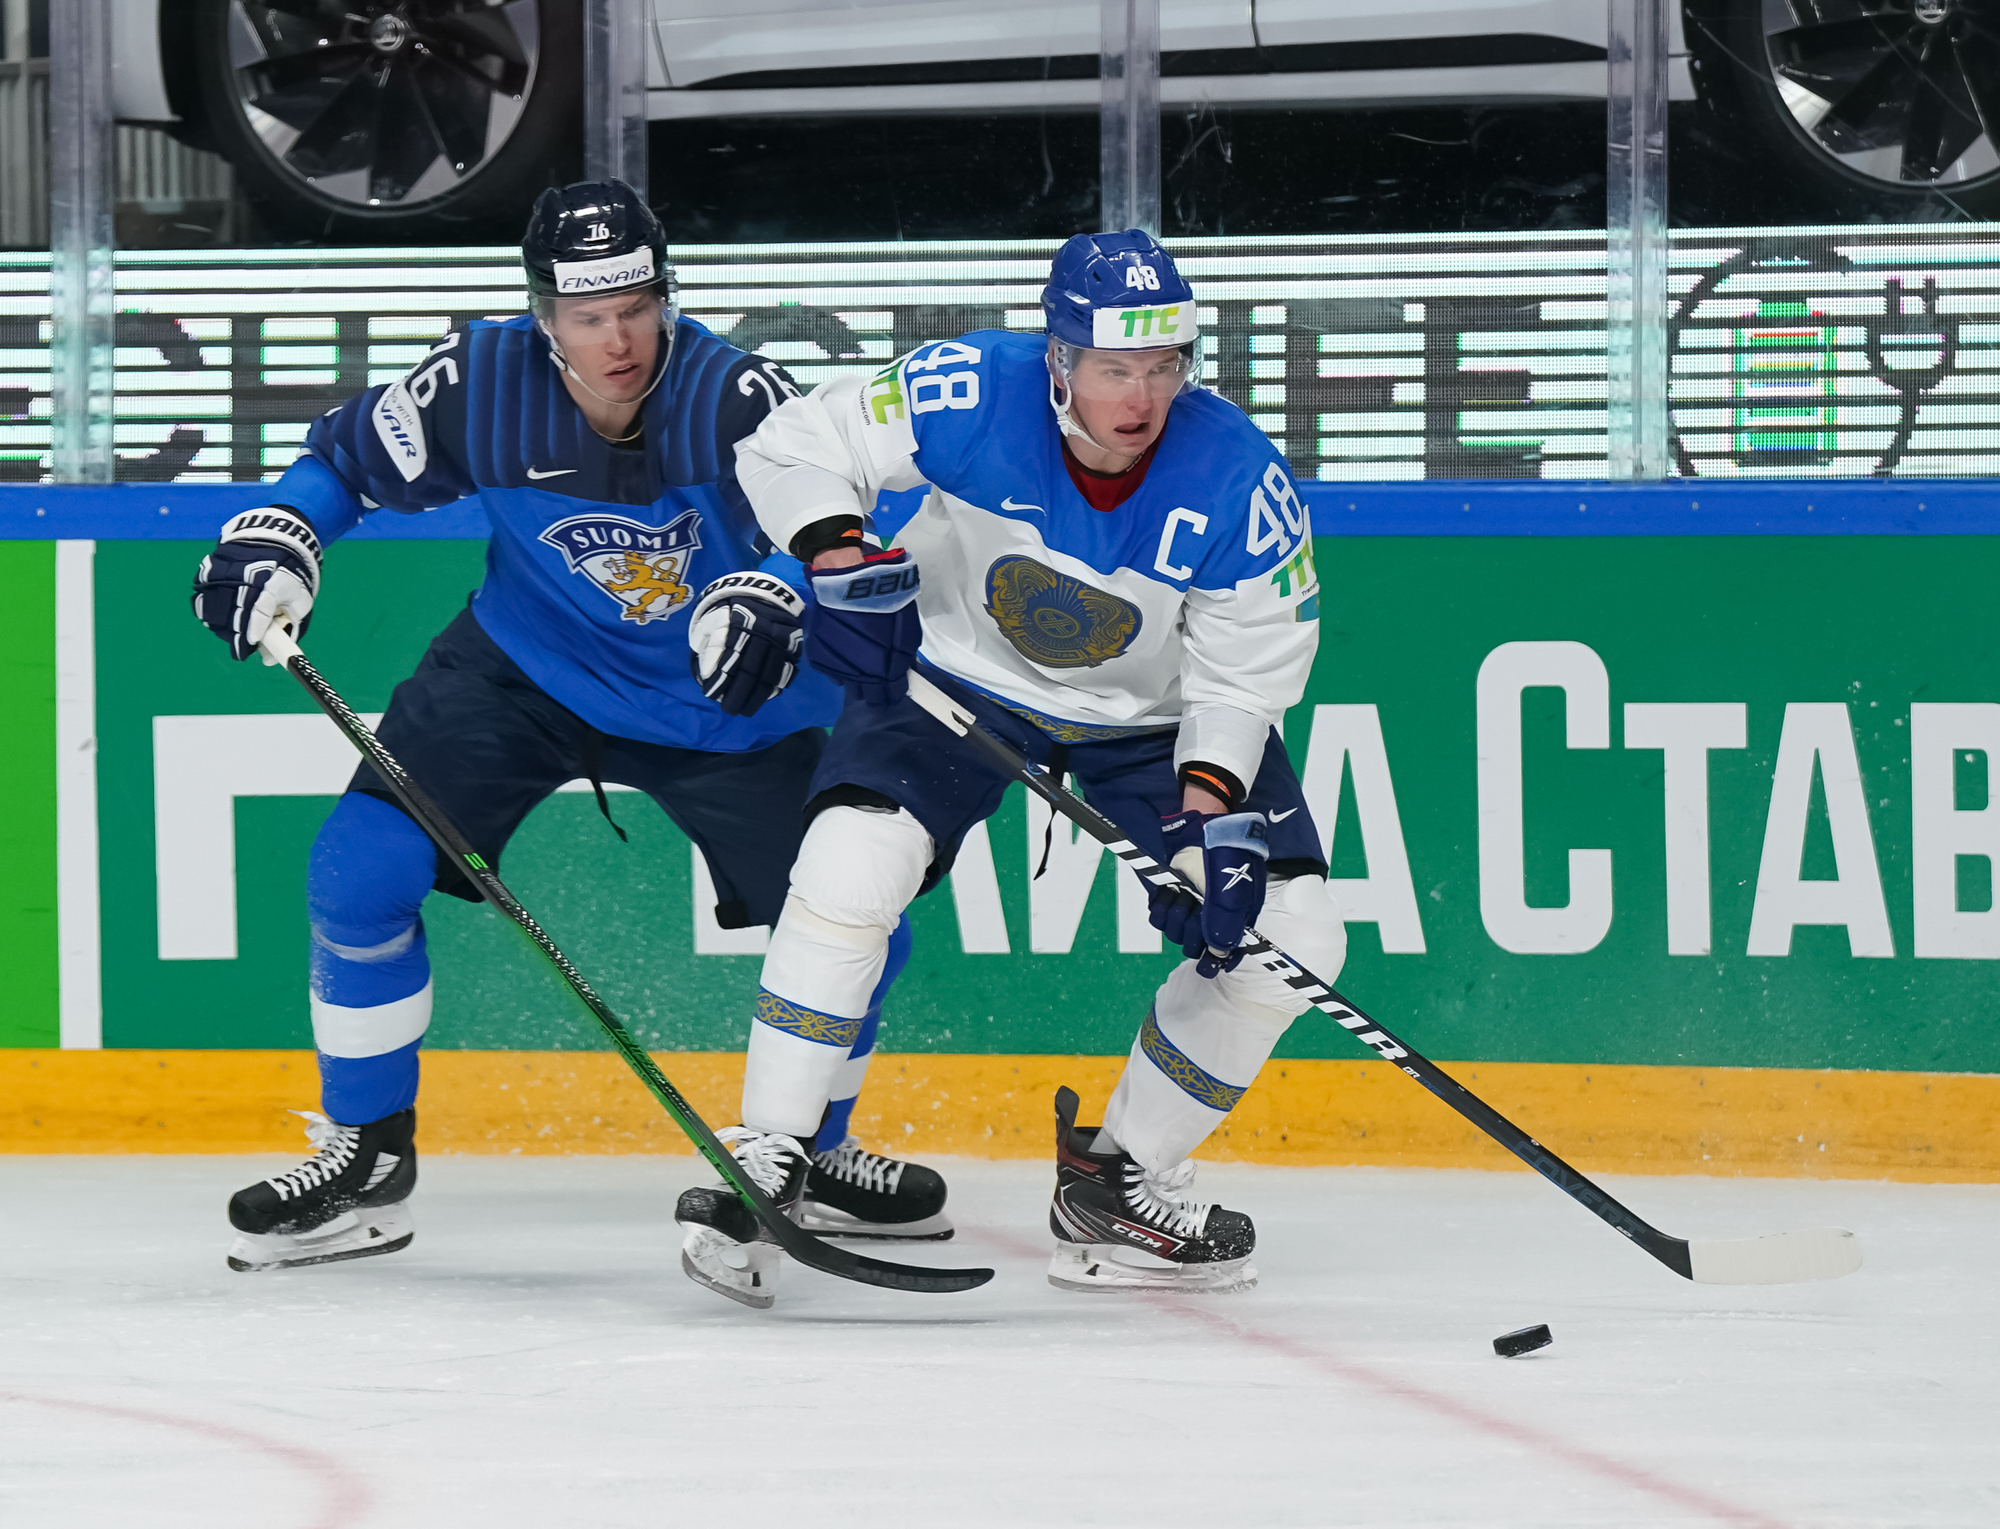 IIHF - Gallery: Kazakhstan vs Finland - 2021 IIHF Ice ...